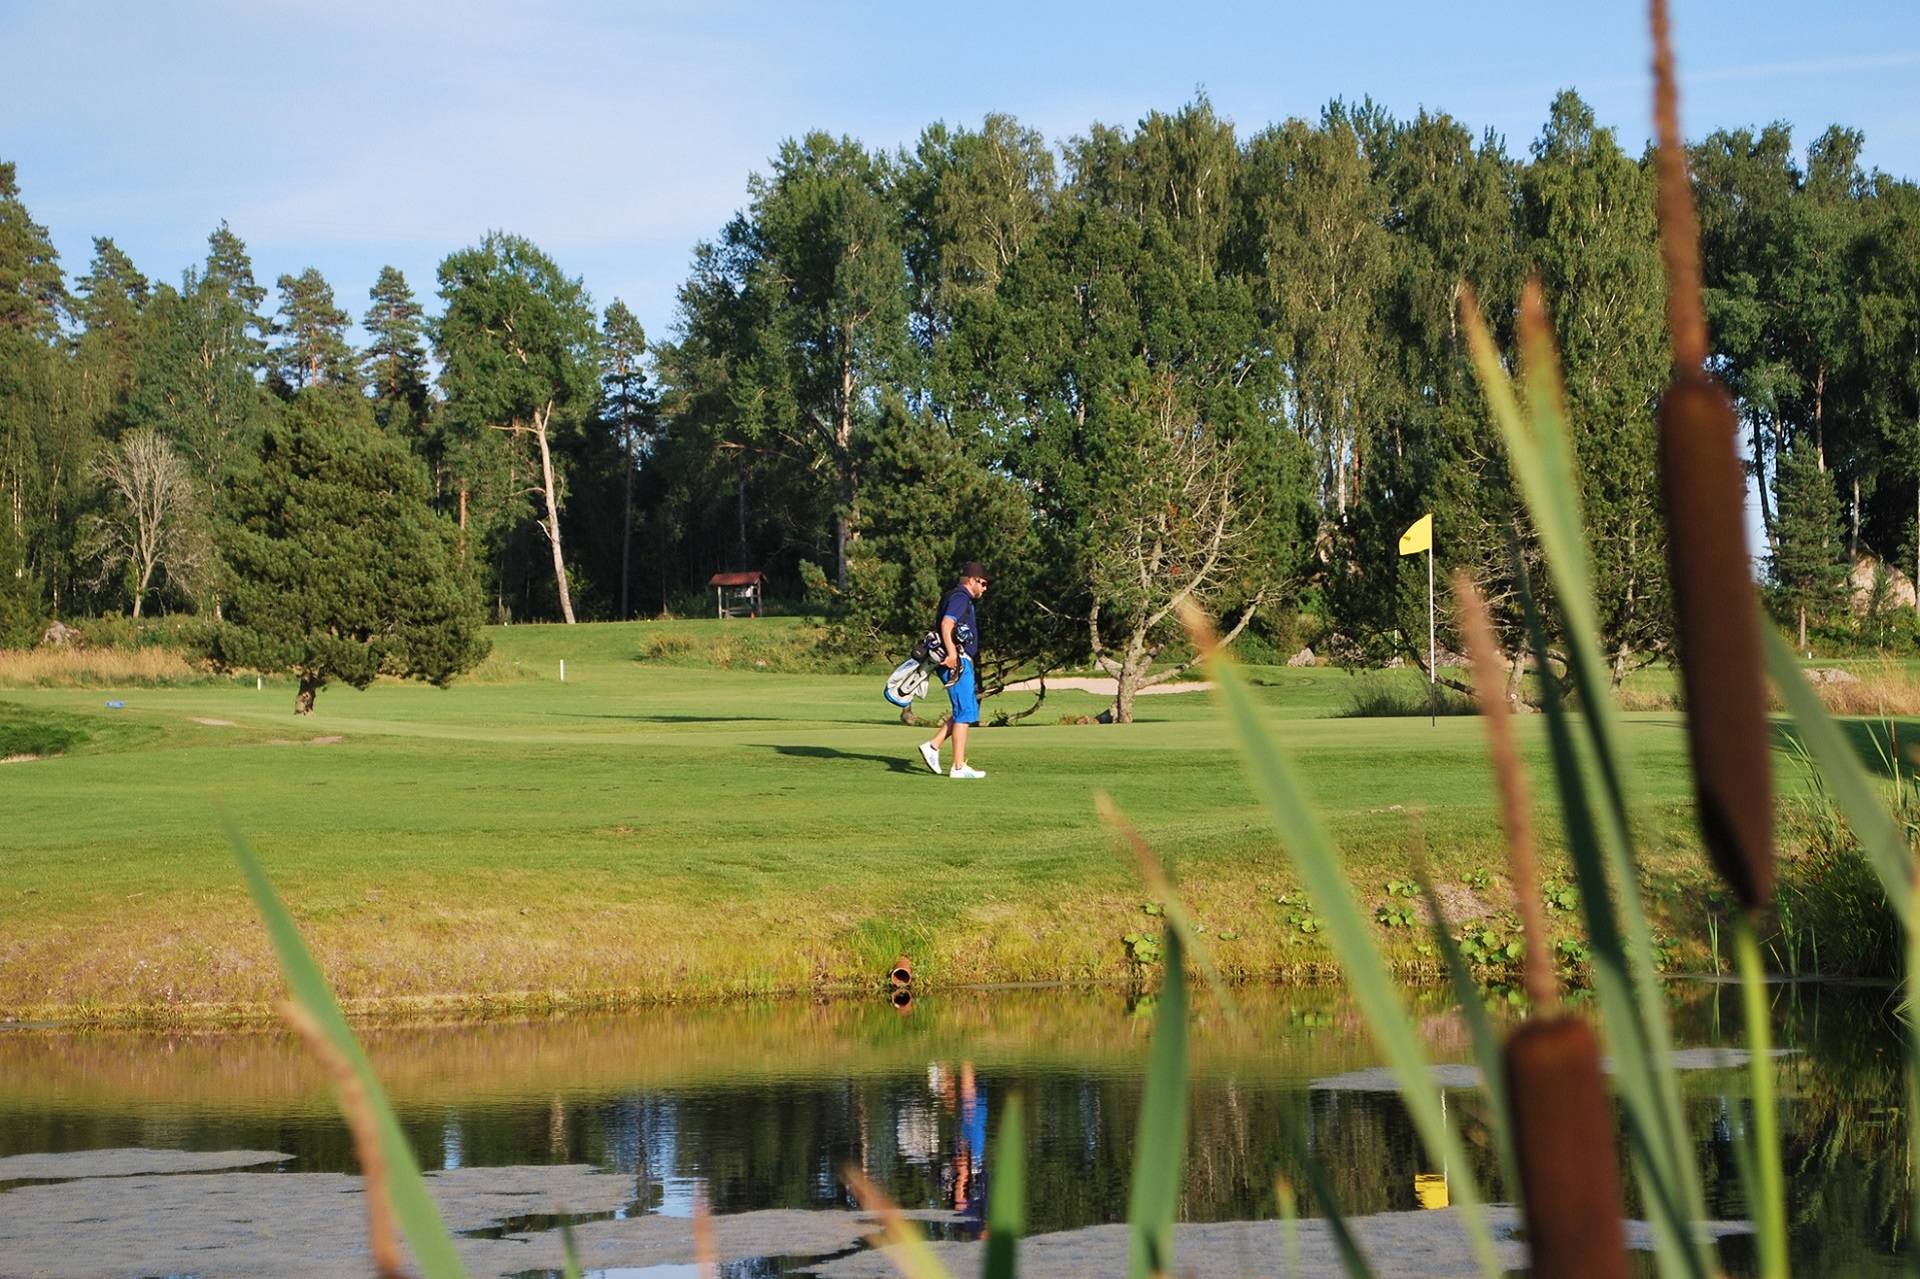 Köpings Golfklubb